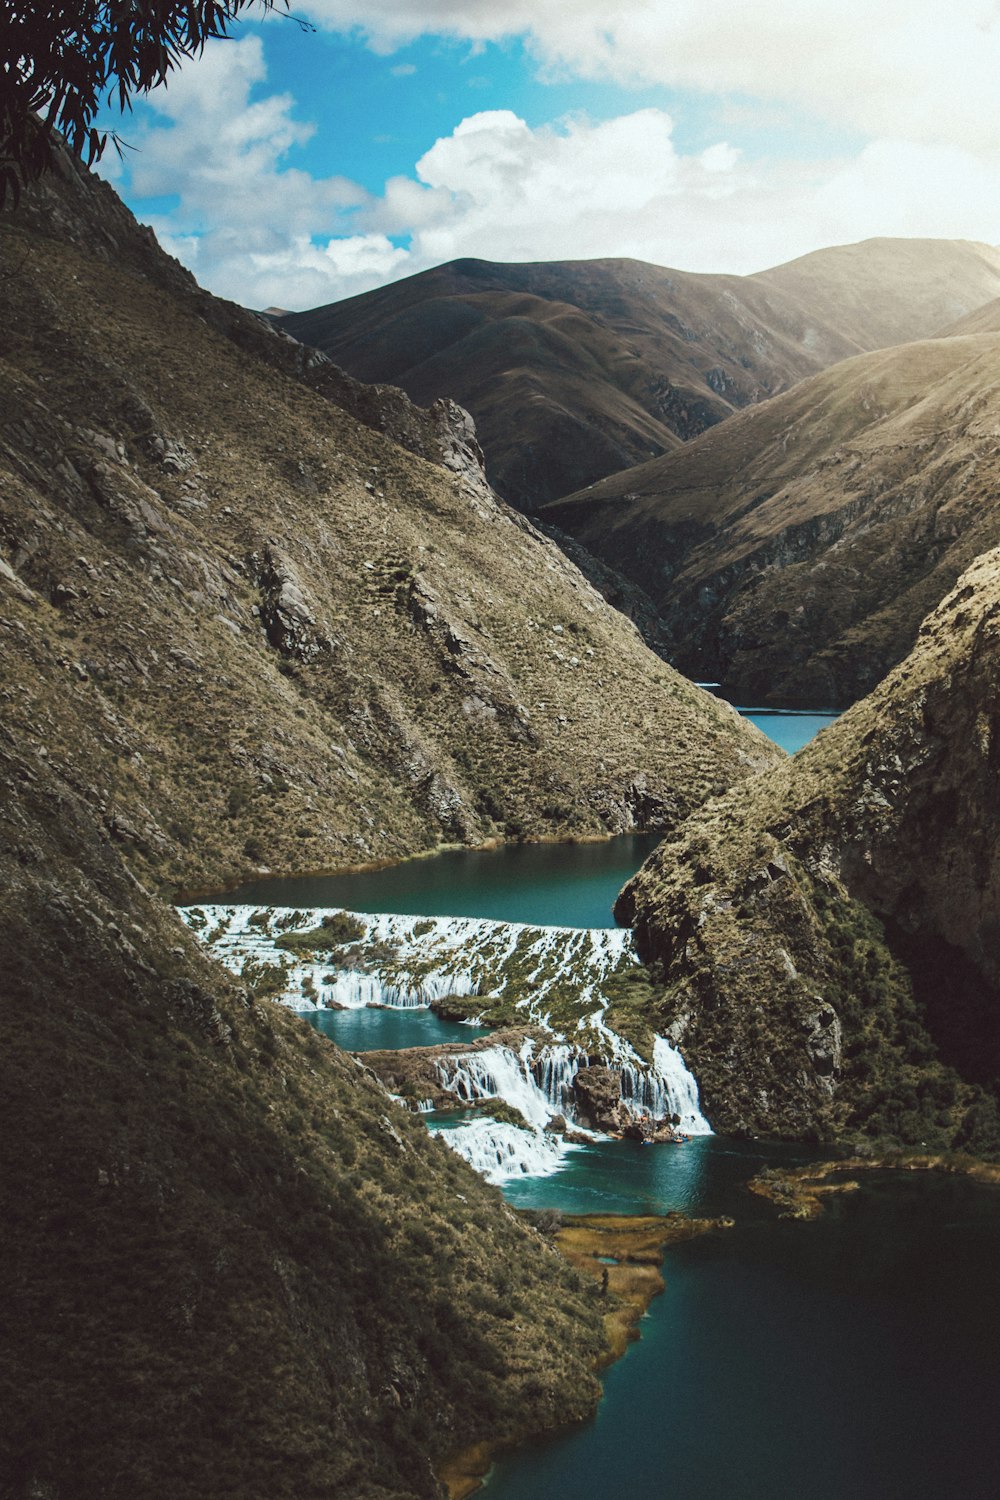 water stream between mountain